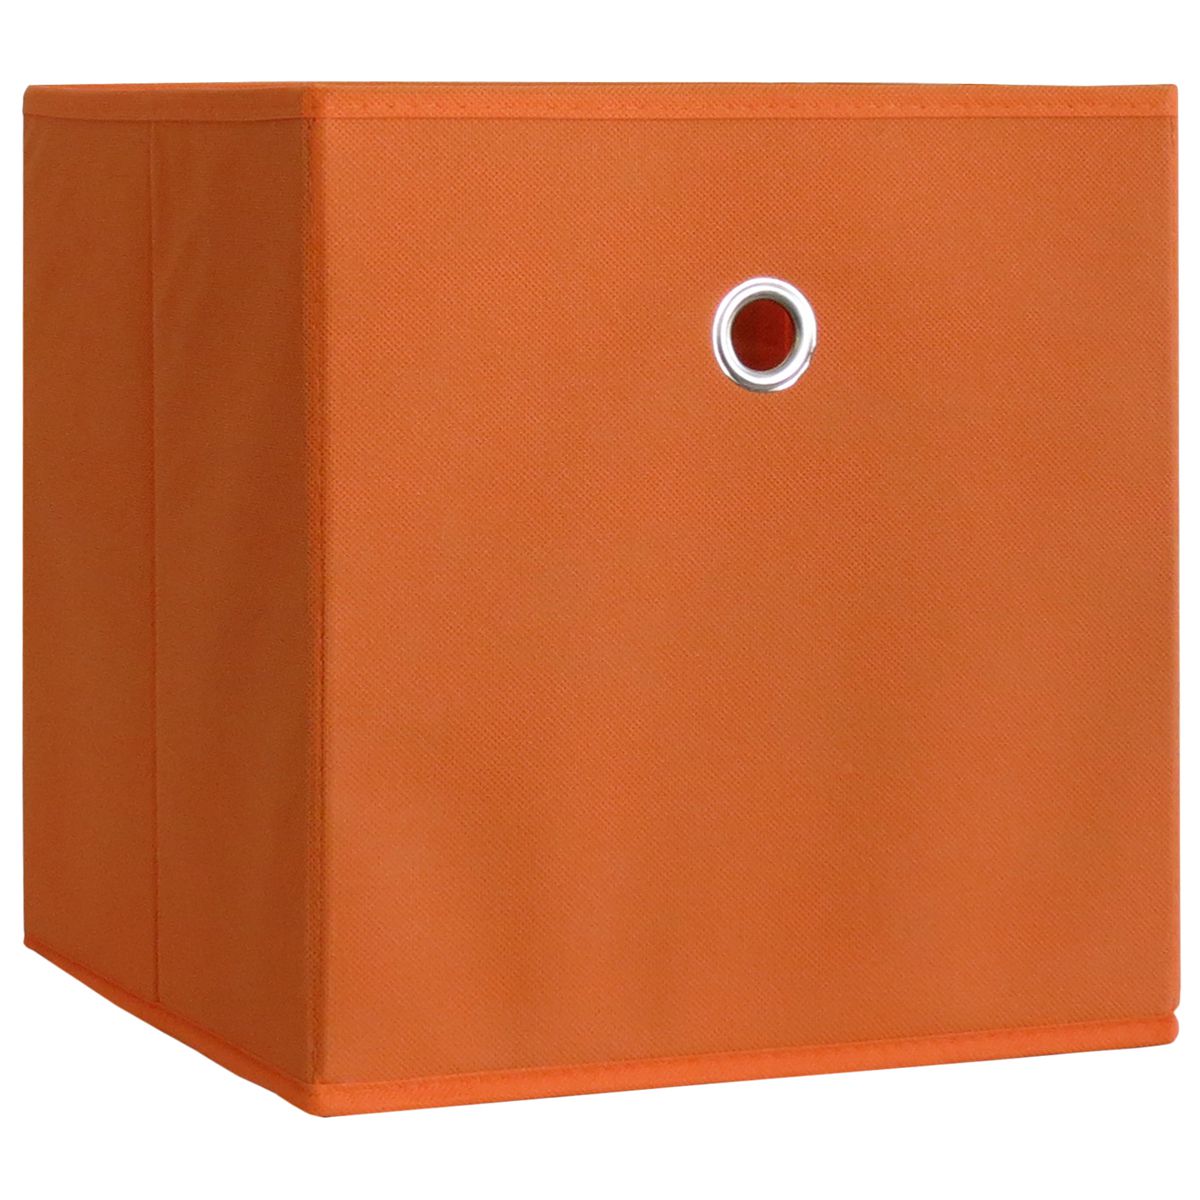 VCM Skládací box oranžový, 2 kusy - Velký Košík